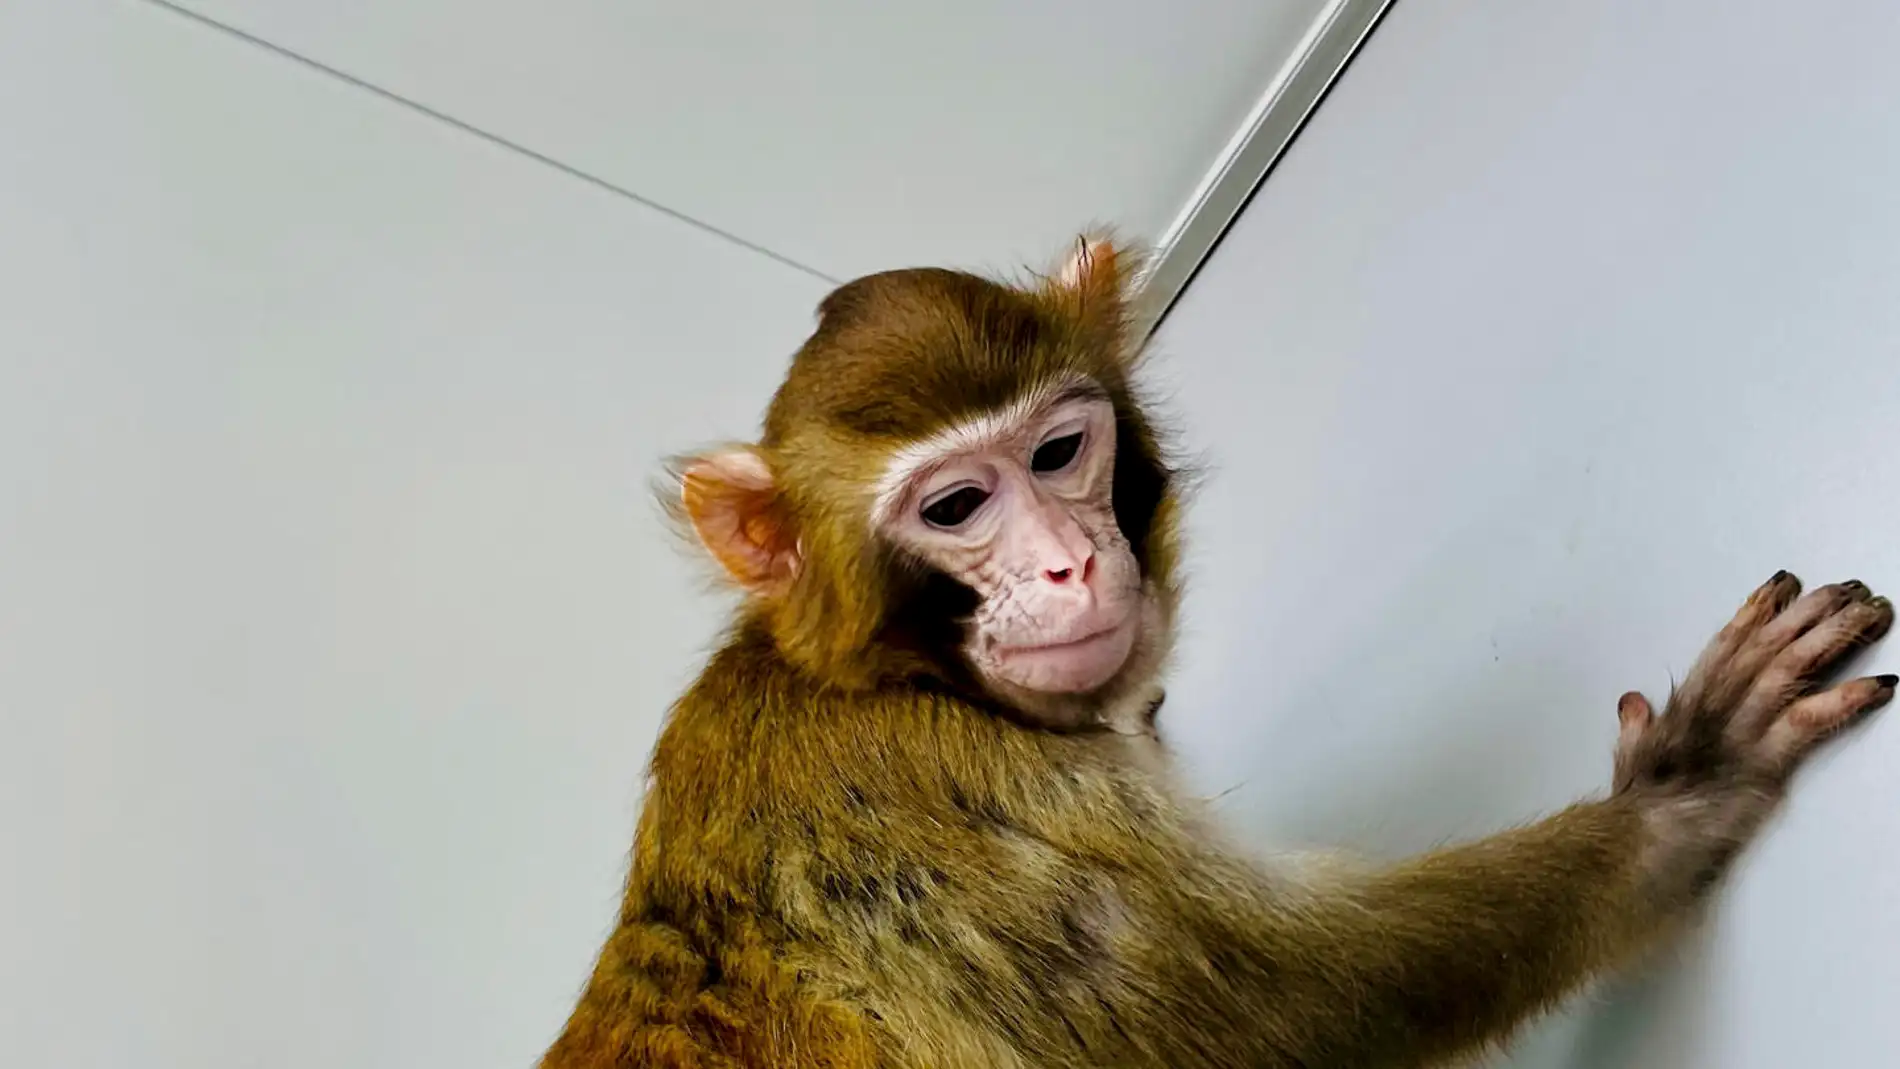 Fotografía del mono rhesus clonado llamado "ReTro" .